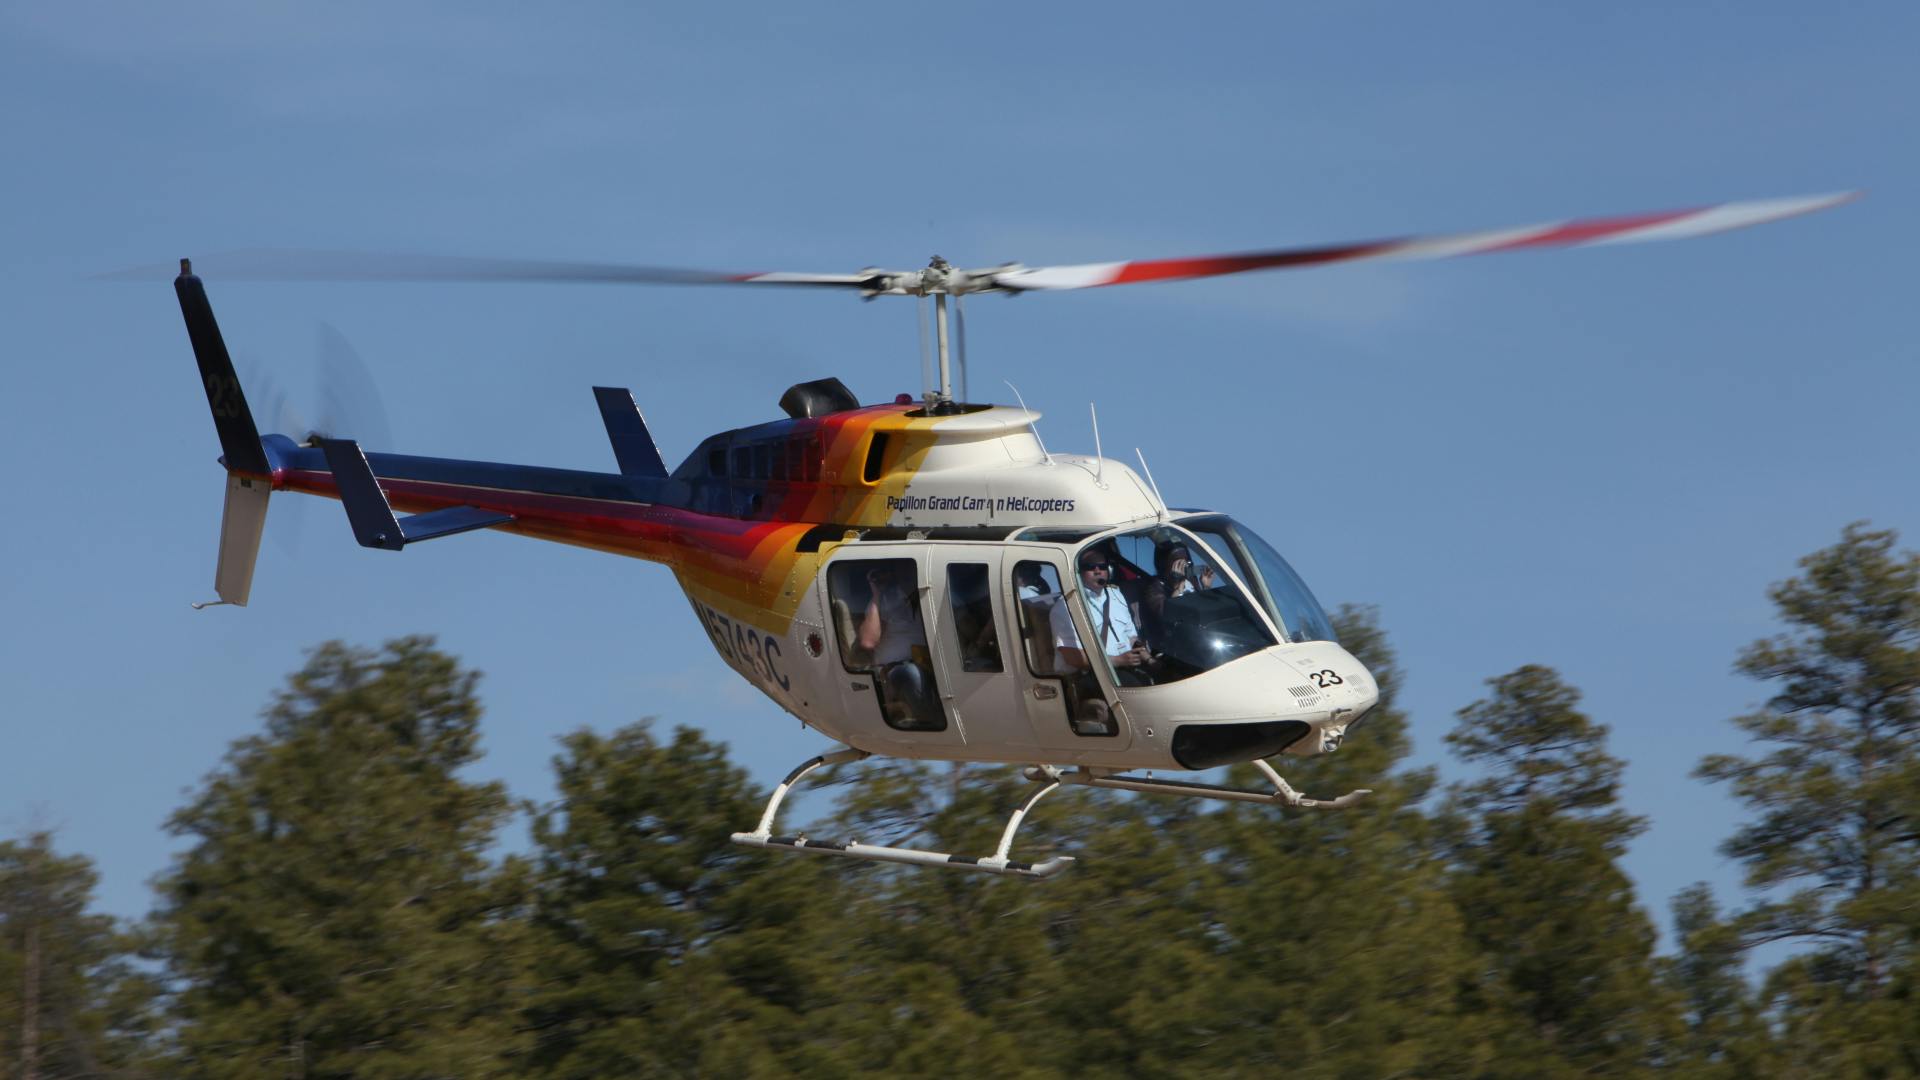 Wycieczka helikopterem do Północnego Kanionu z południowego brzegu Wielkiego Kanionu